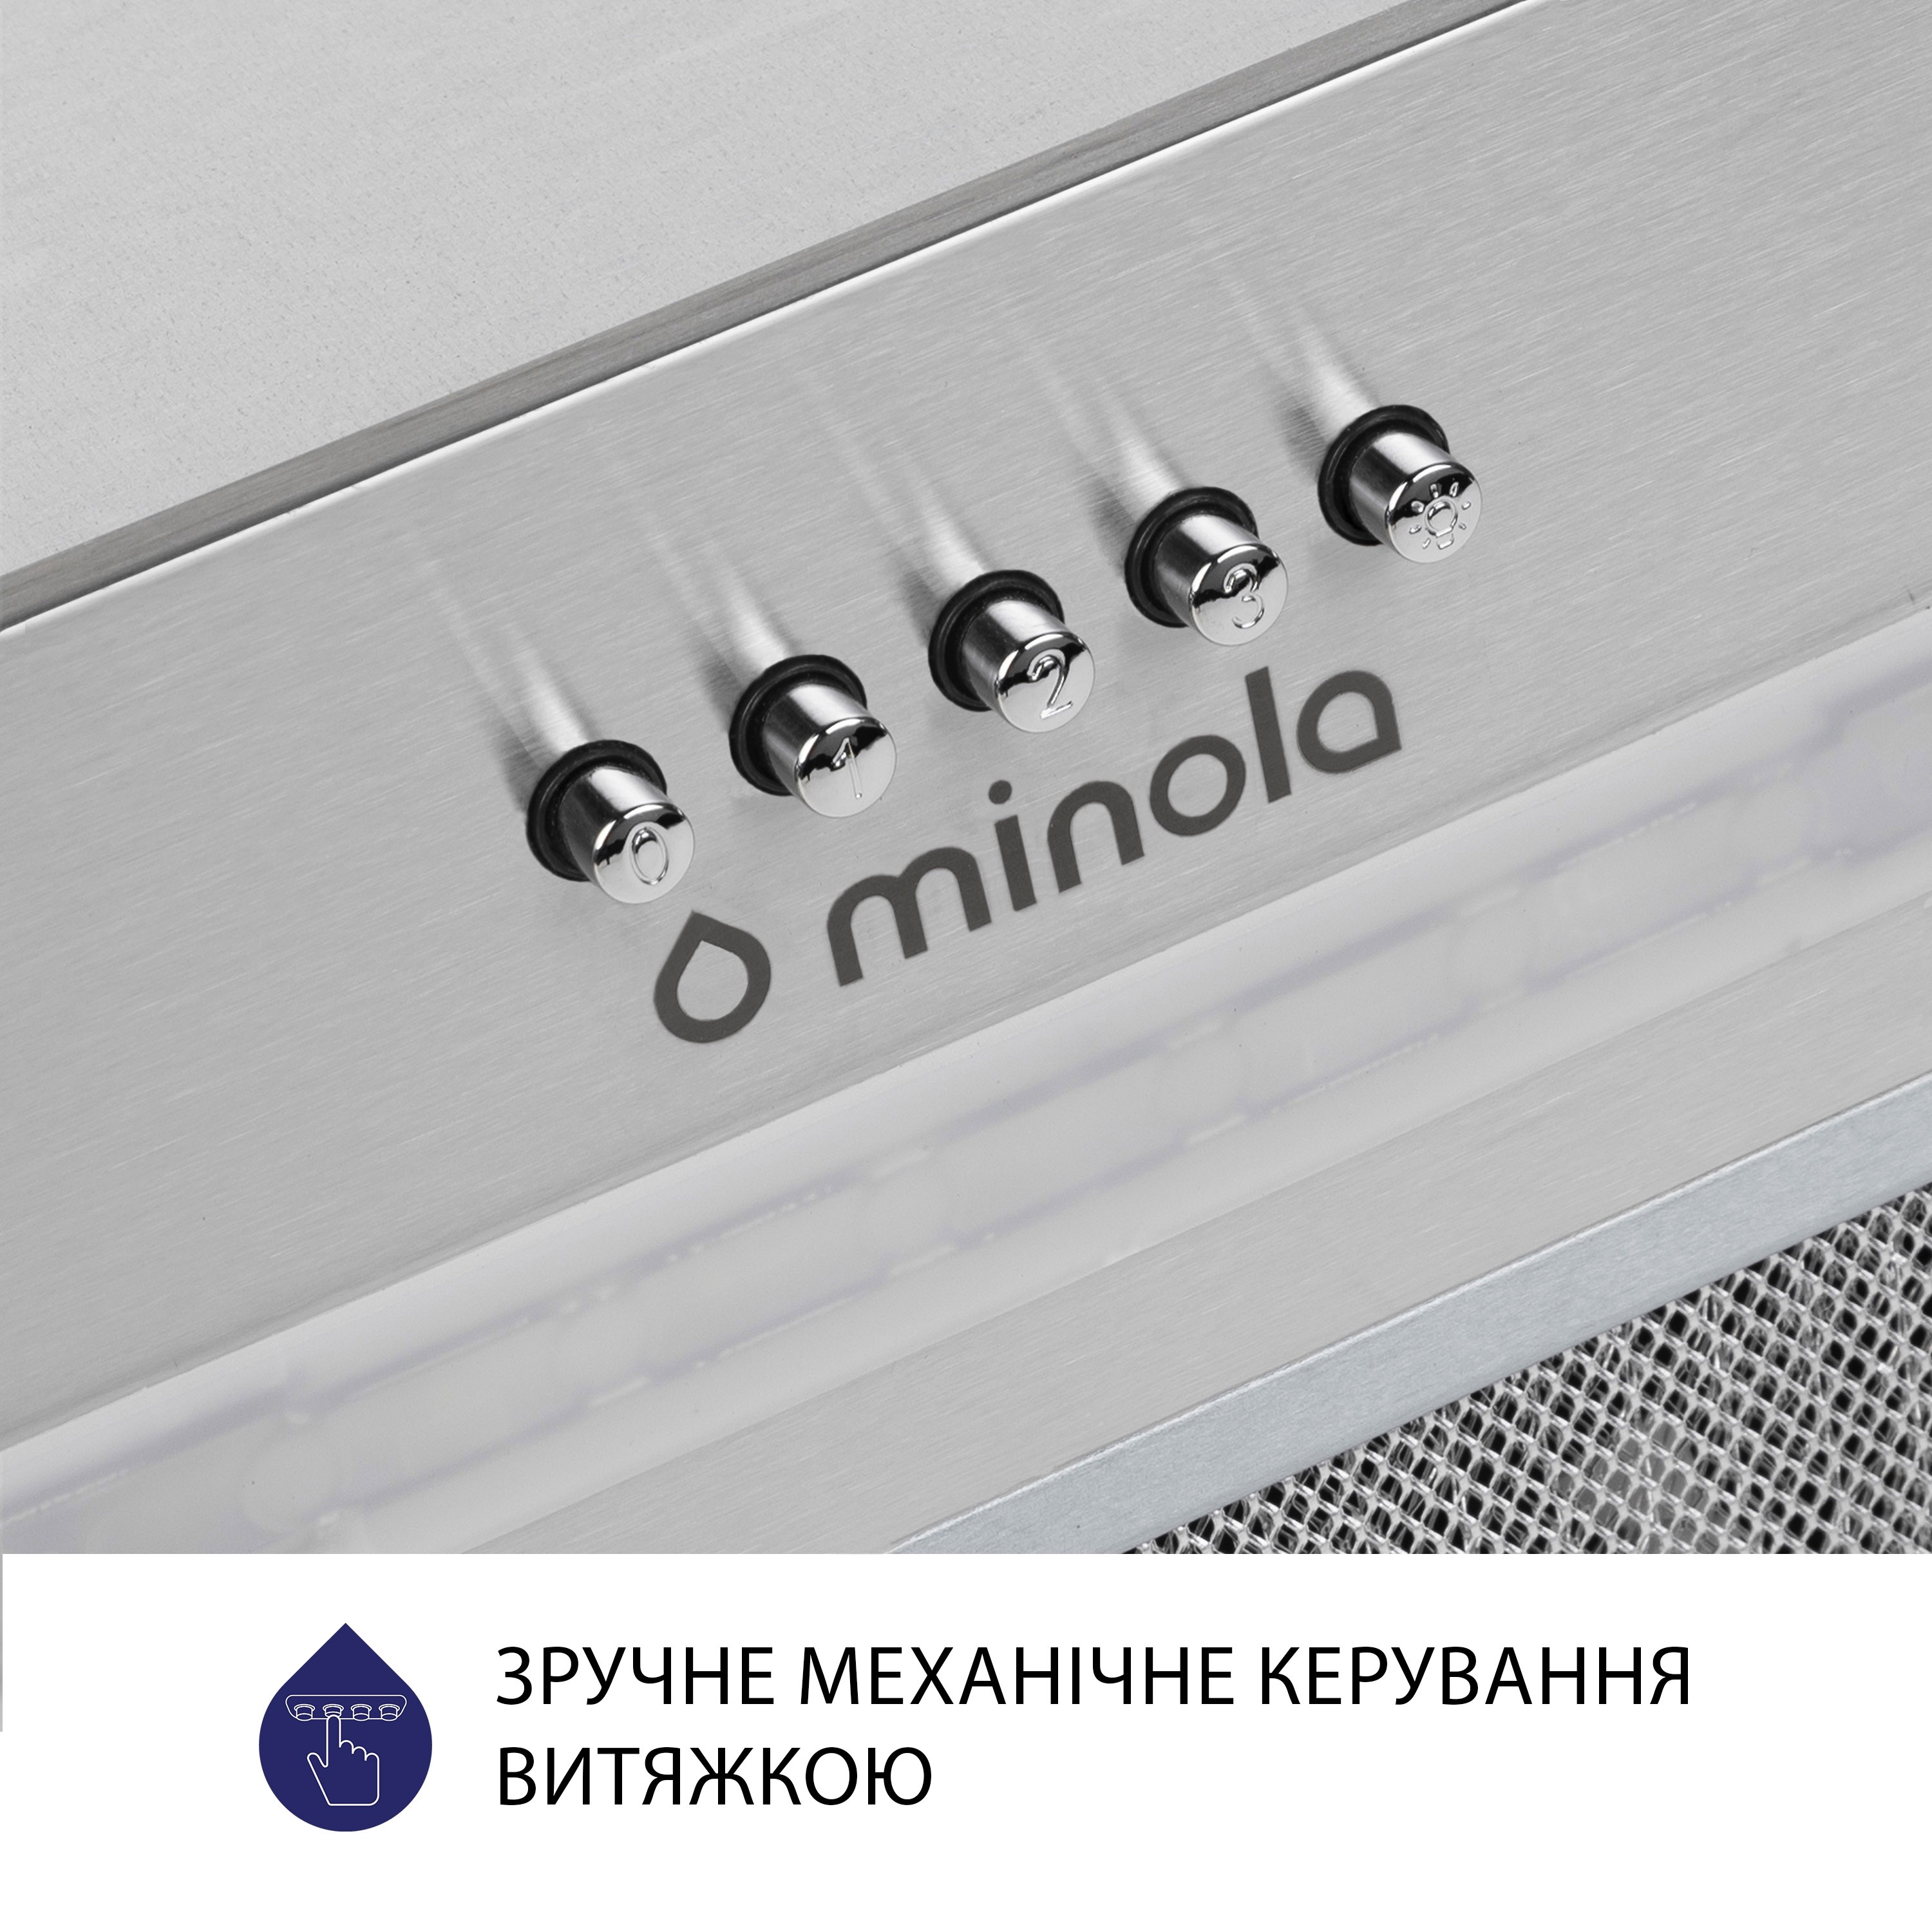 Витяжка кухонная полновстраиваемая Minola HBI 5223 I 700 LED инструкция - изображение 6